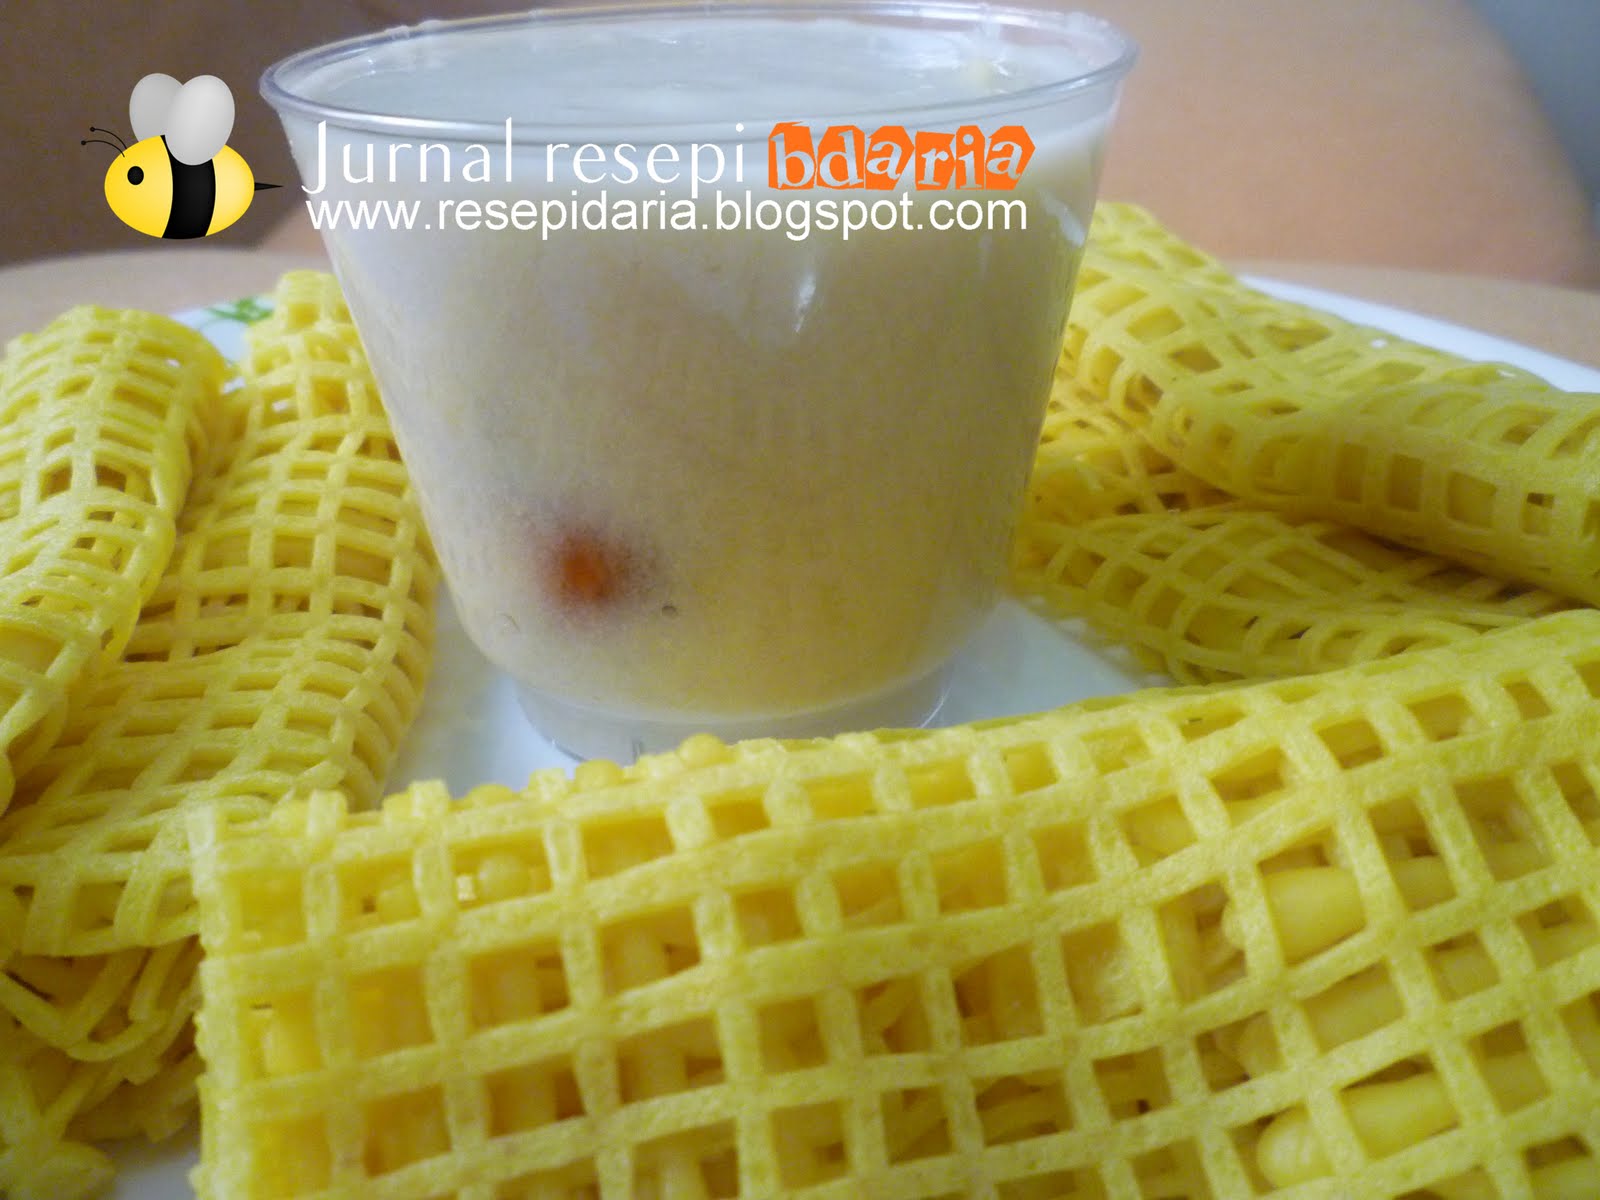 Jurnal resepi bdaria: Roti Jala kuah durian